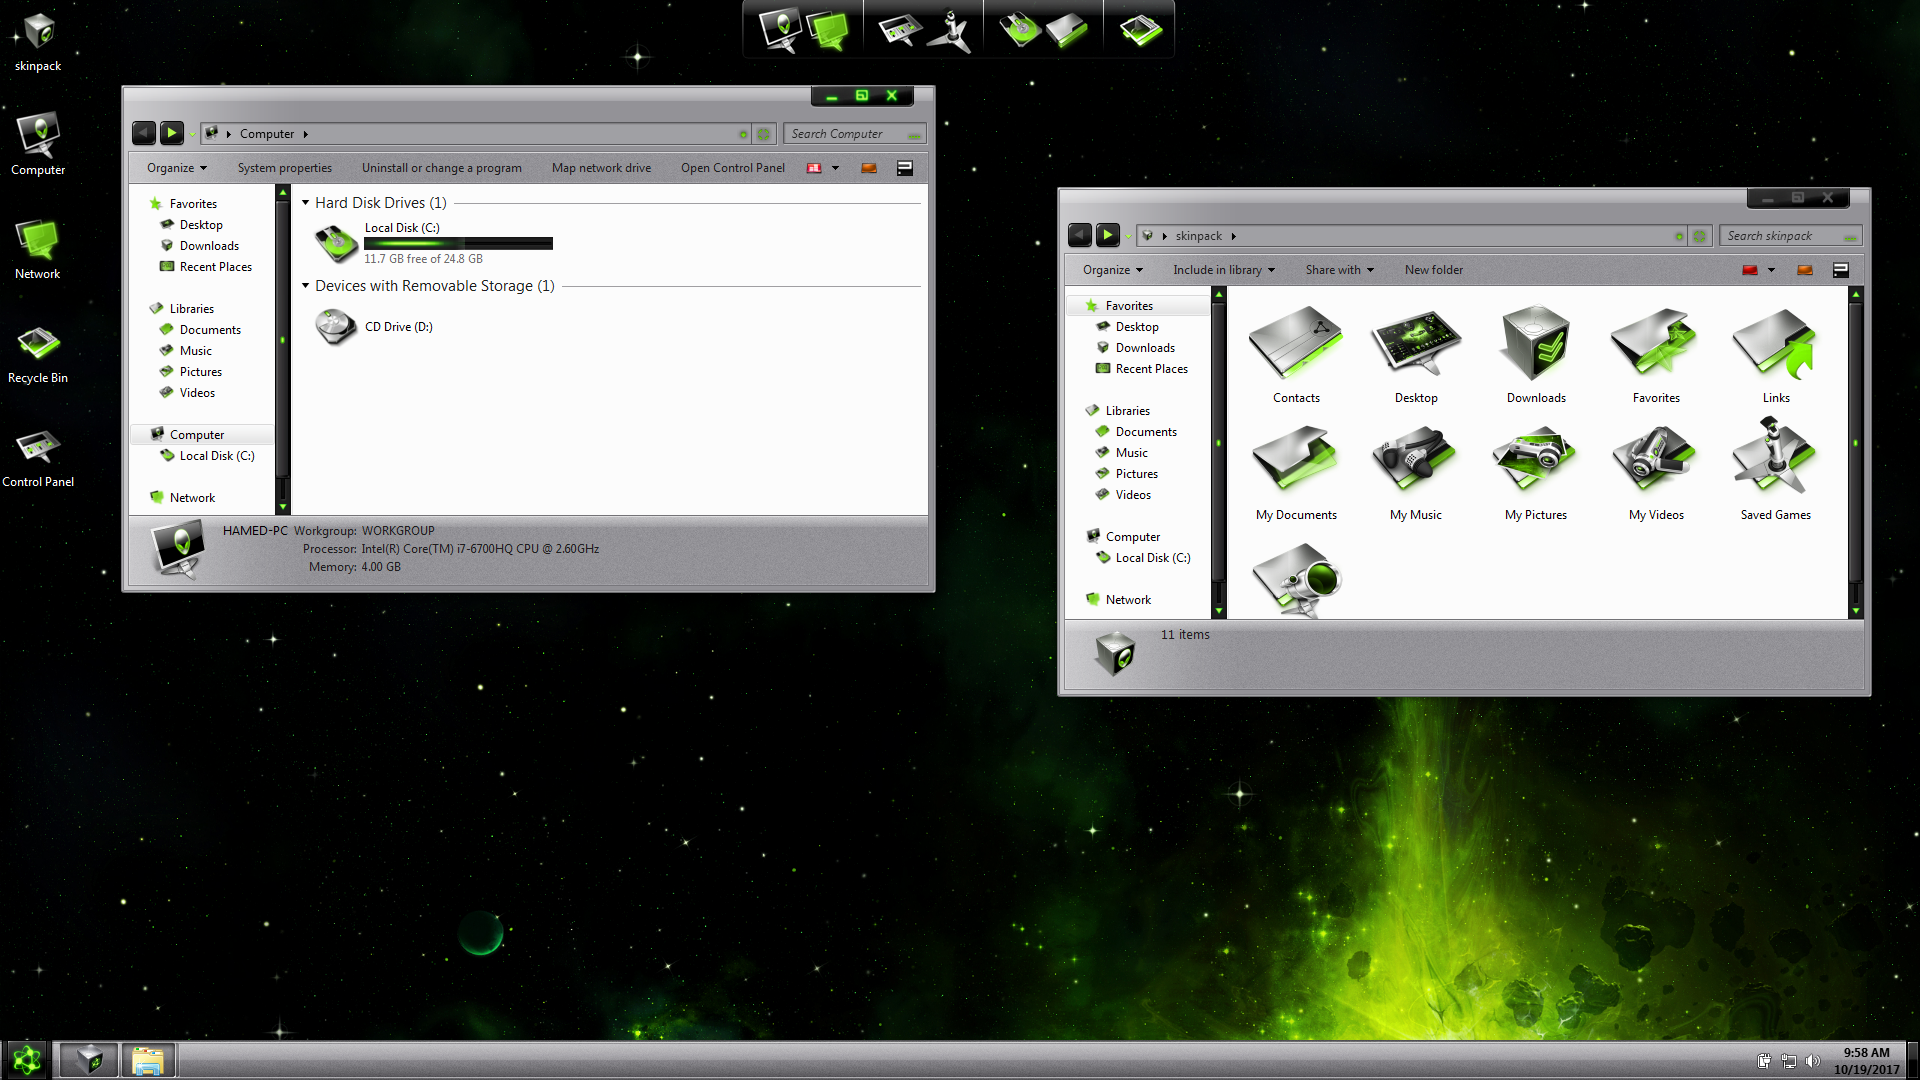 LightMatter Green SkinPack for Windows 7